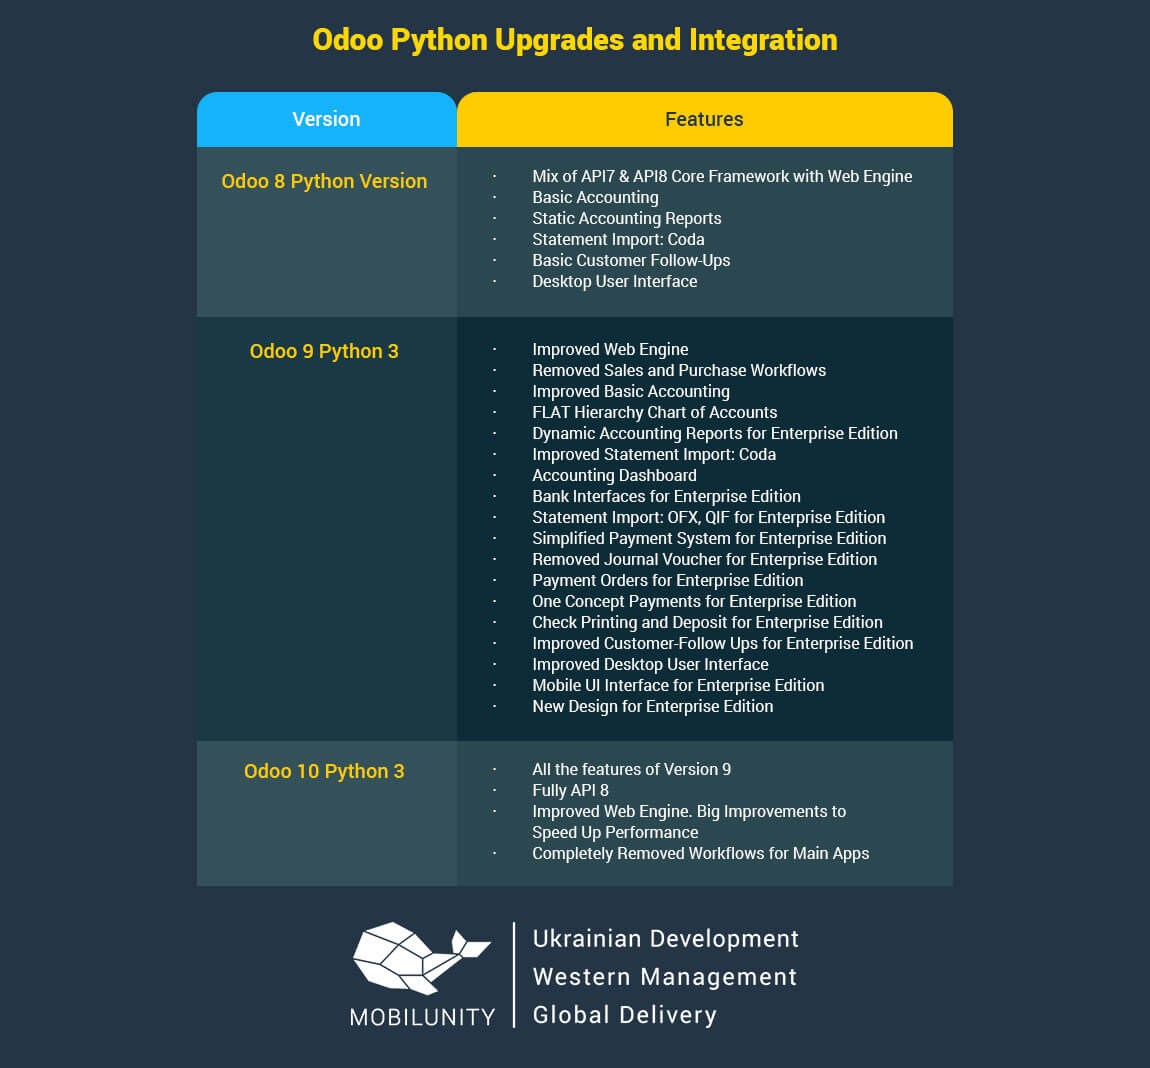 odoo python upgrades and integration